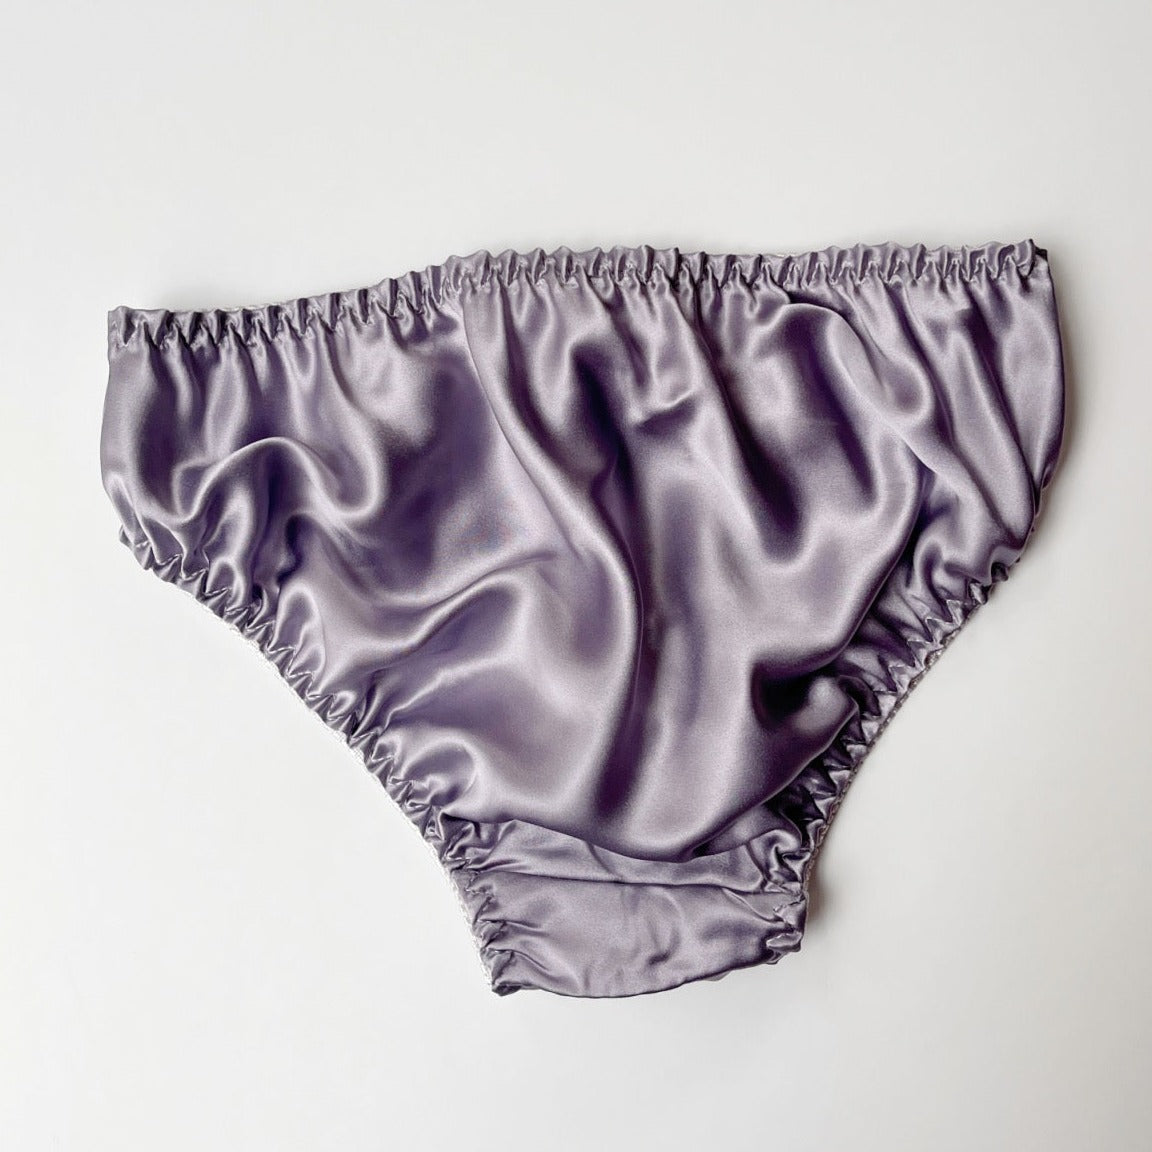 XWSM 100% Natural Mulberry Silk Underwear Soft Briefs Women Ladies